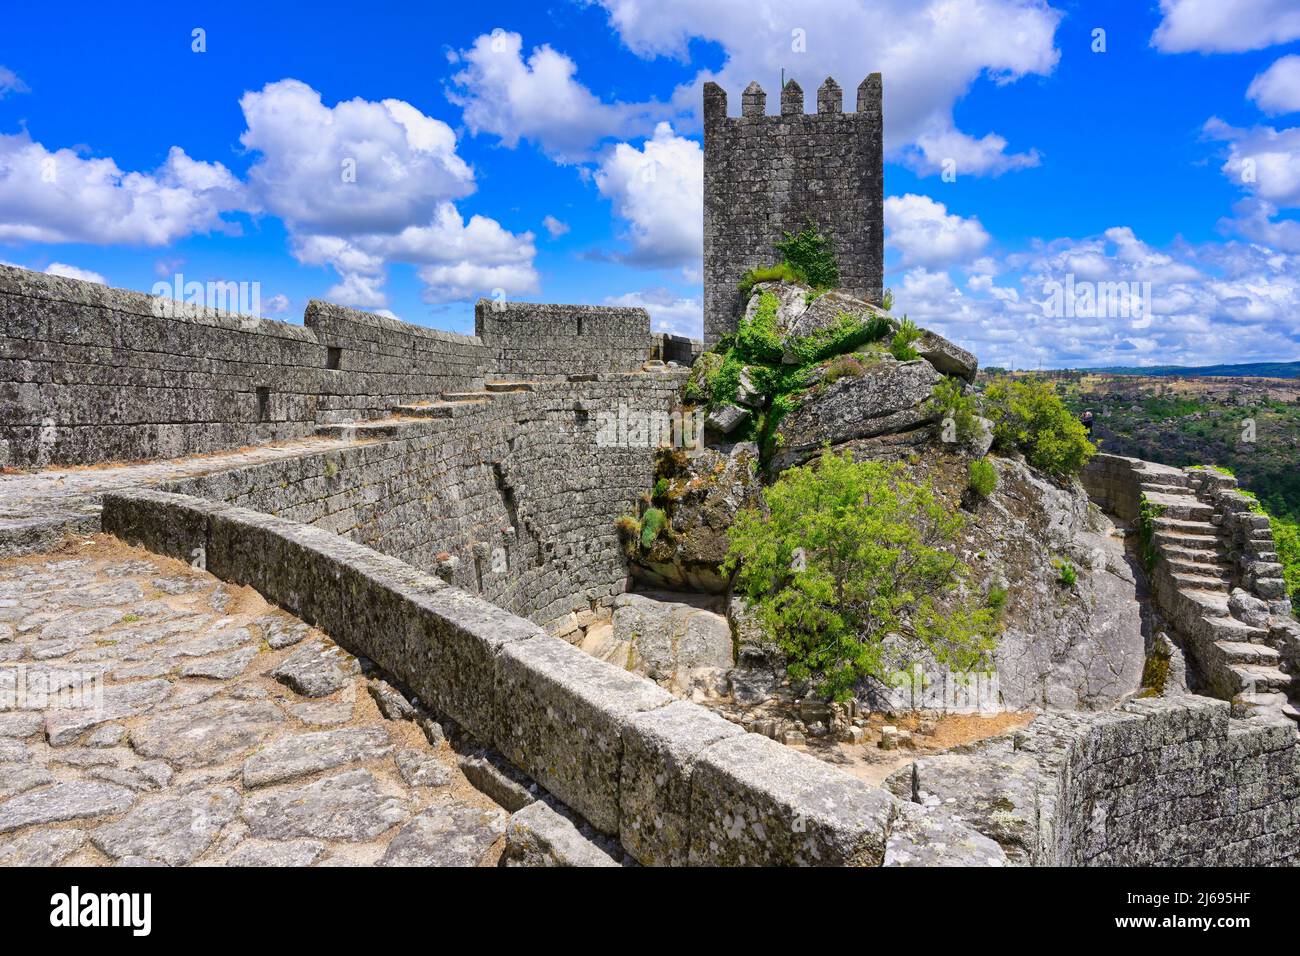 Castle and tower, Sortelha, Serra da Estrela, Beira Alta, Centro, Portugal Stock Photo